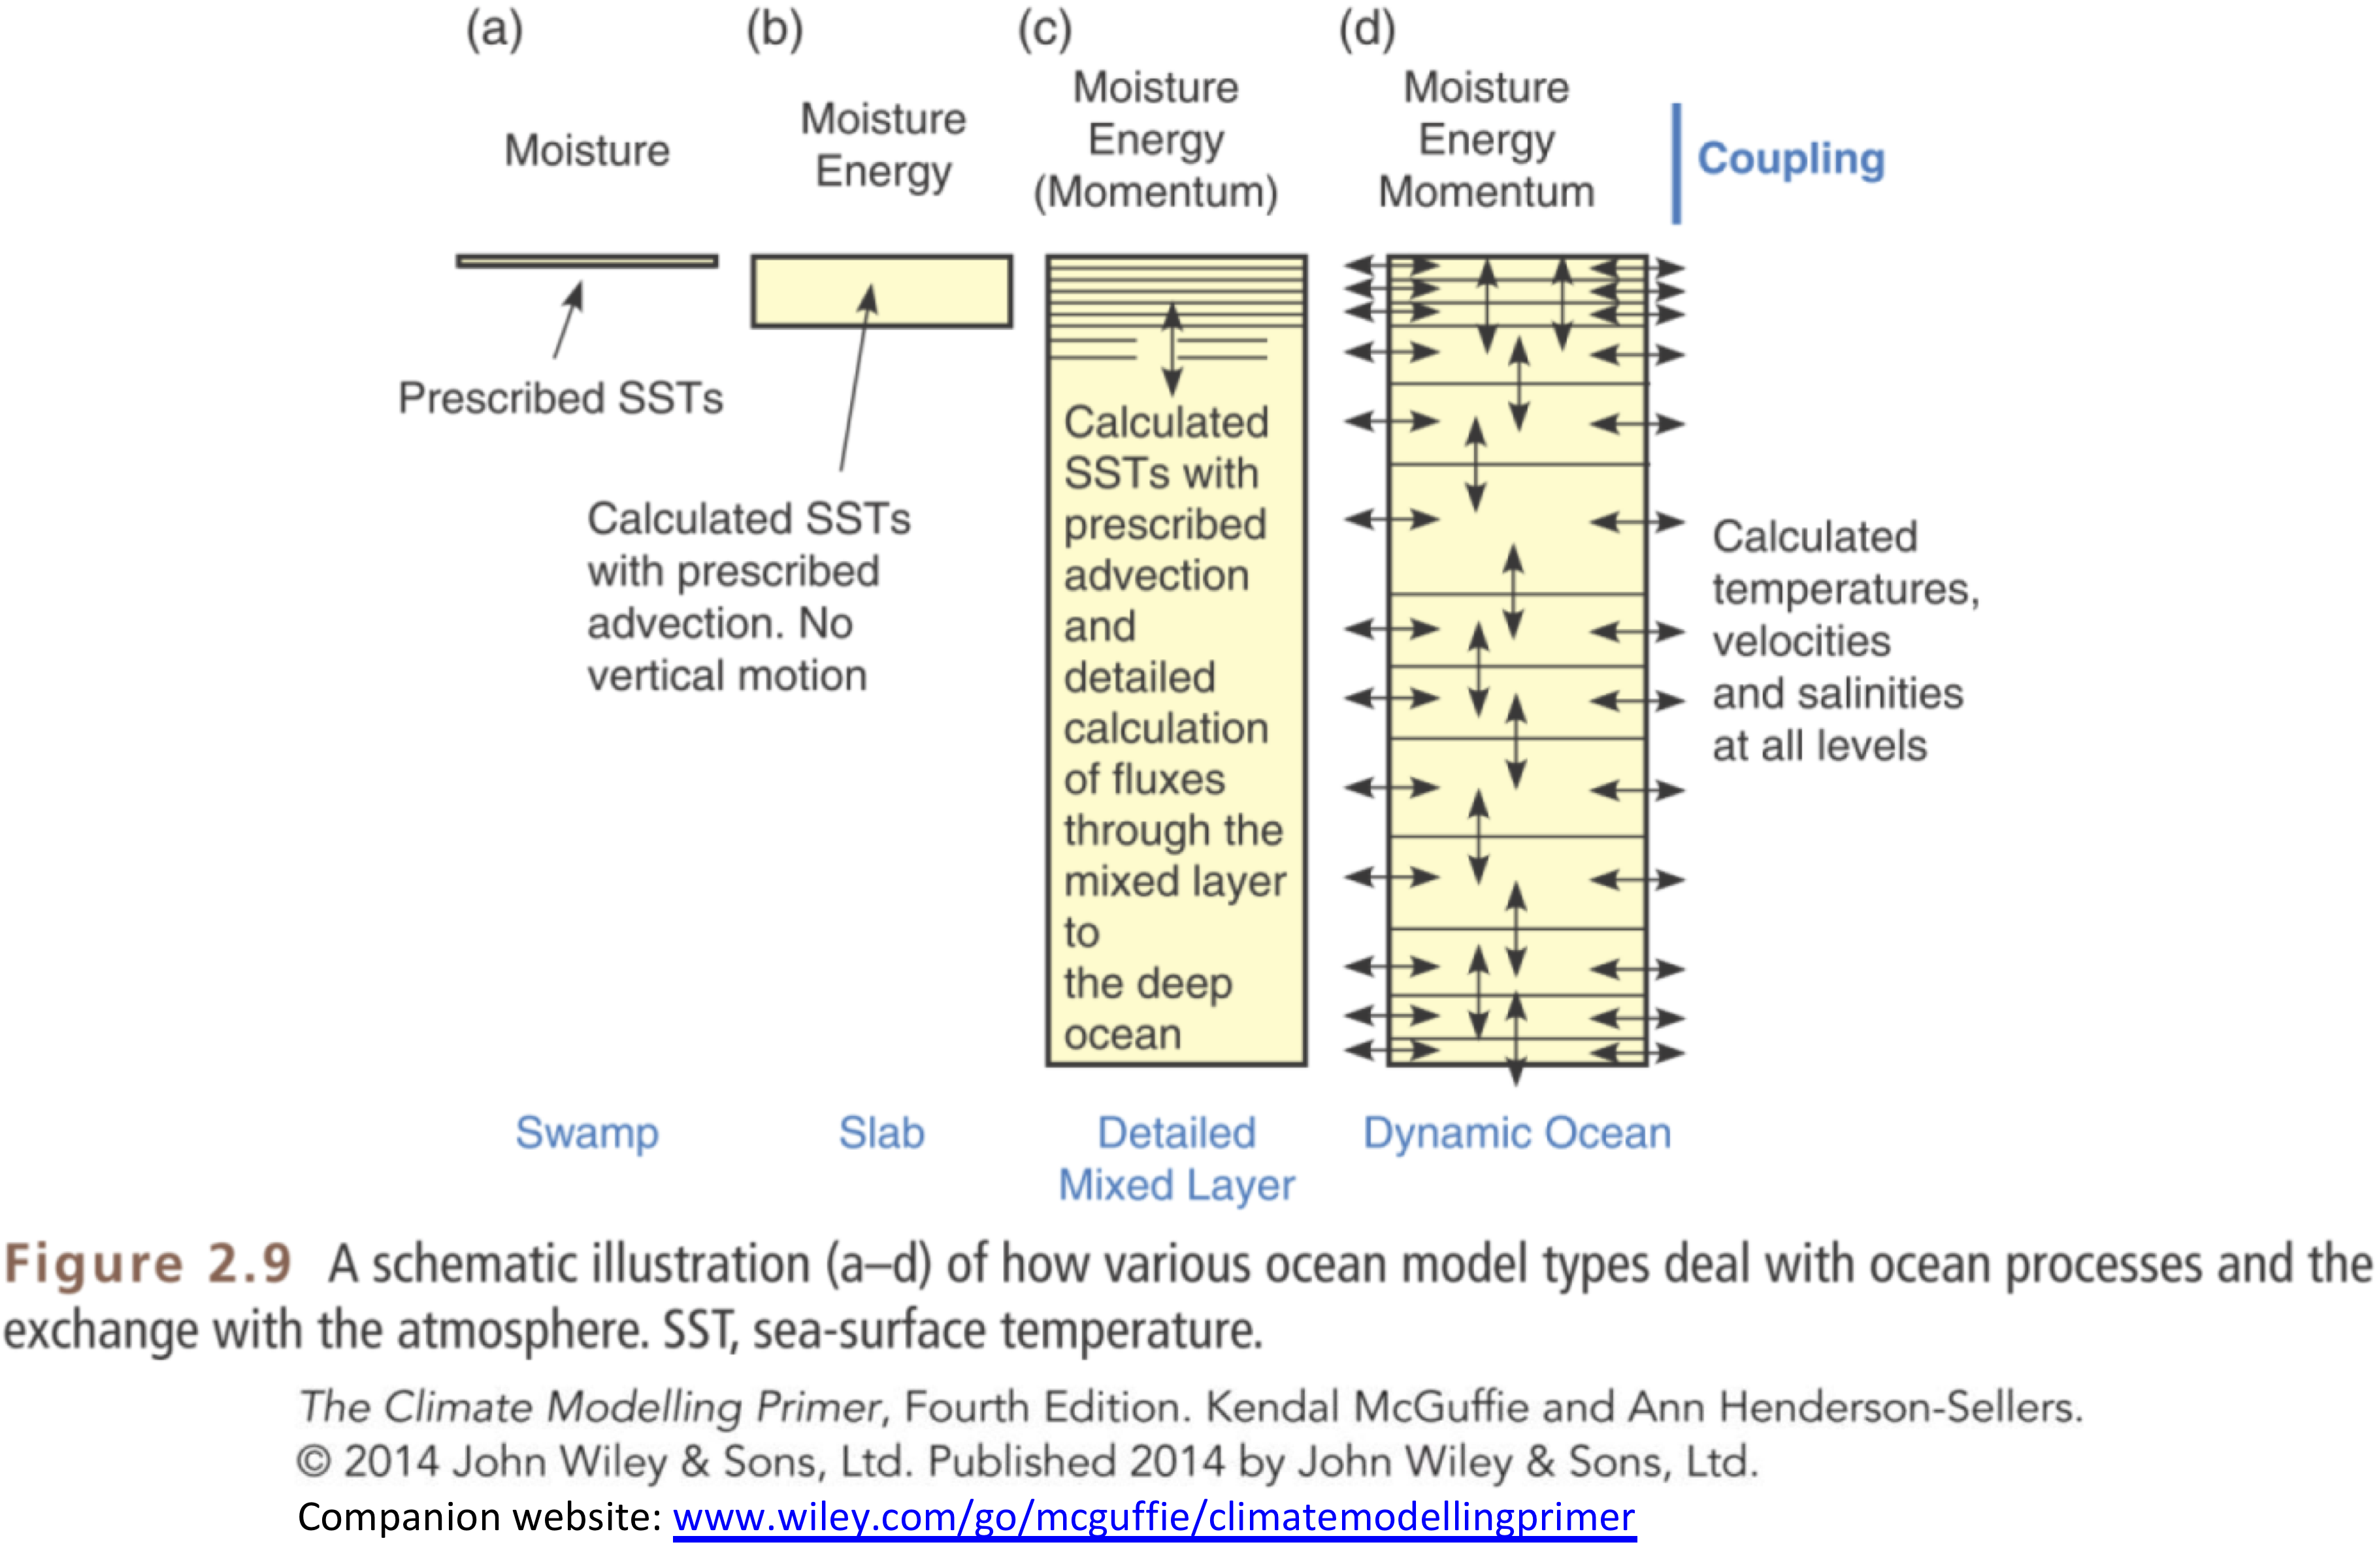 Figure 2.9: ocean model hierarchy